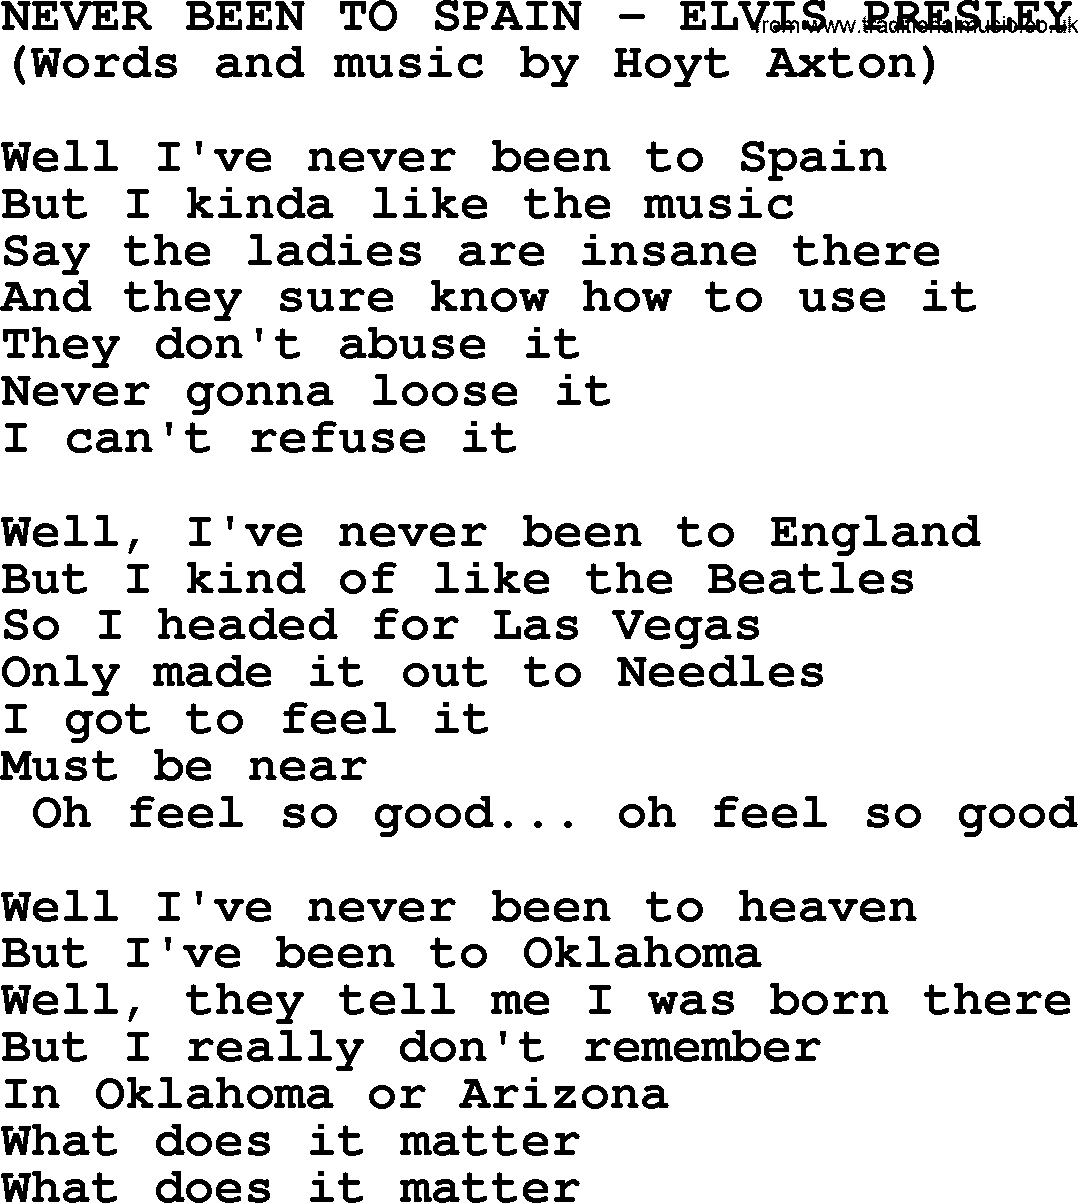 Elvis Presley song: Never Been To Spain lyrics